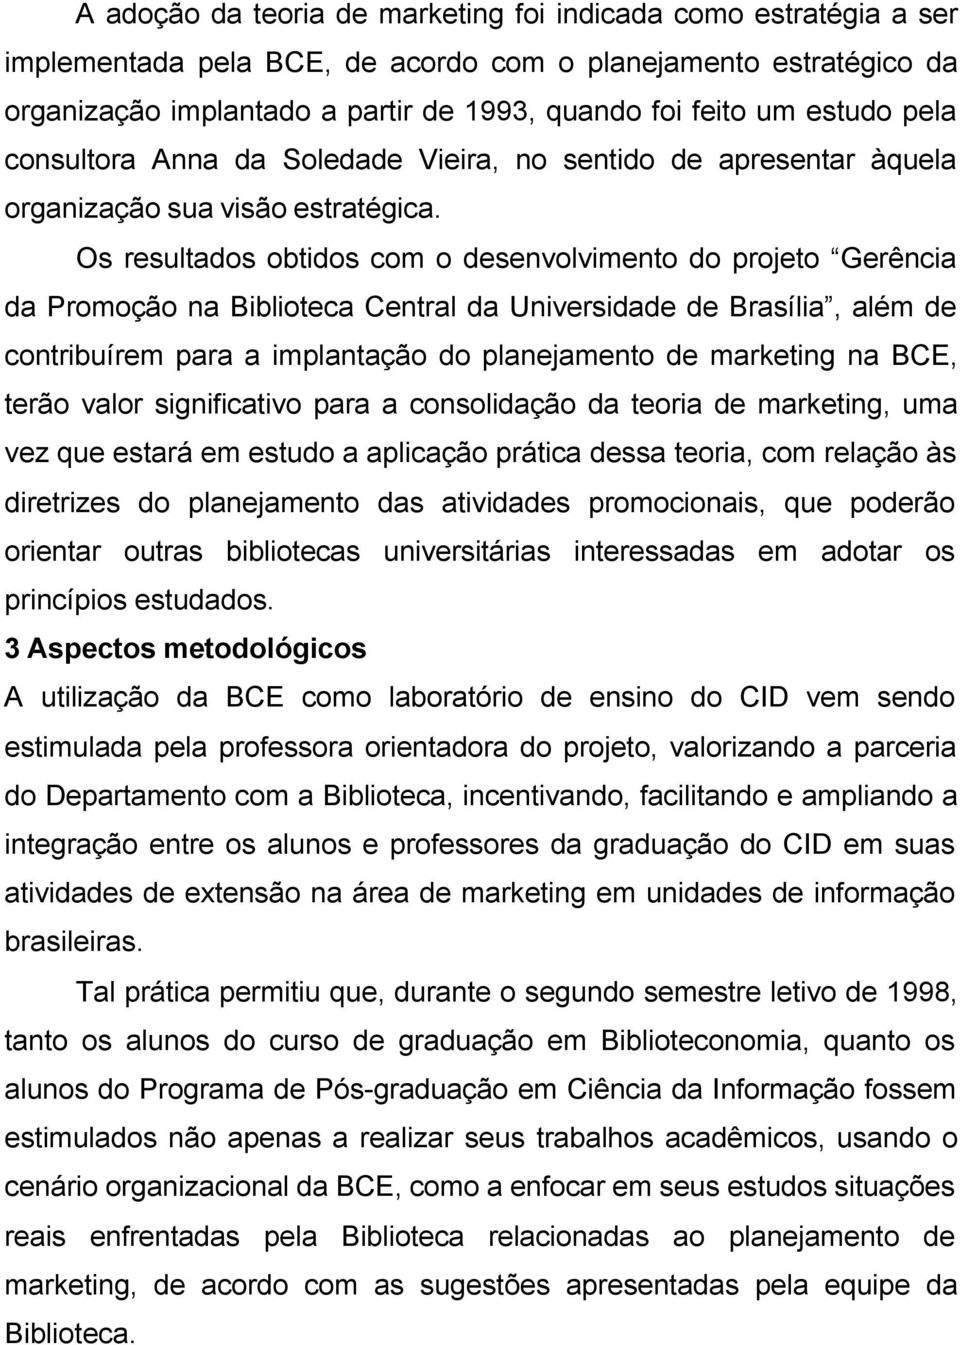 Os resultados obtidos com o desenvolvimento do projeto Gerência da Promoção na Biblioteca Central da Universidade de Brasília, além de contribuírem para a implantação do planejamento de marketing na